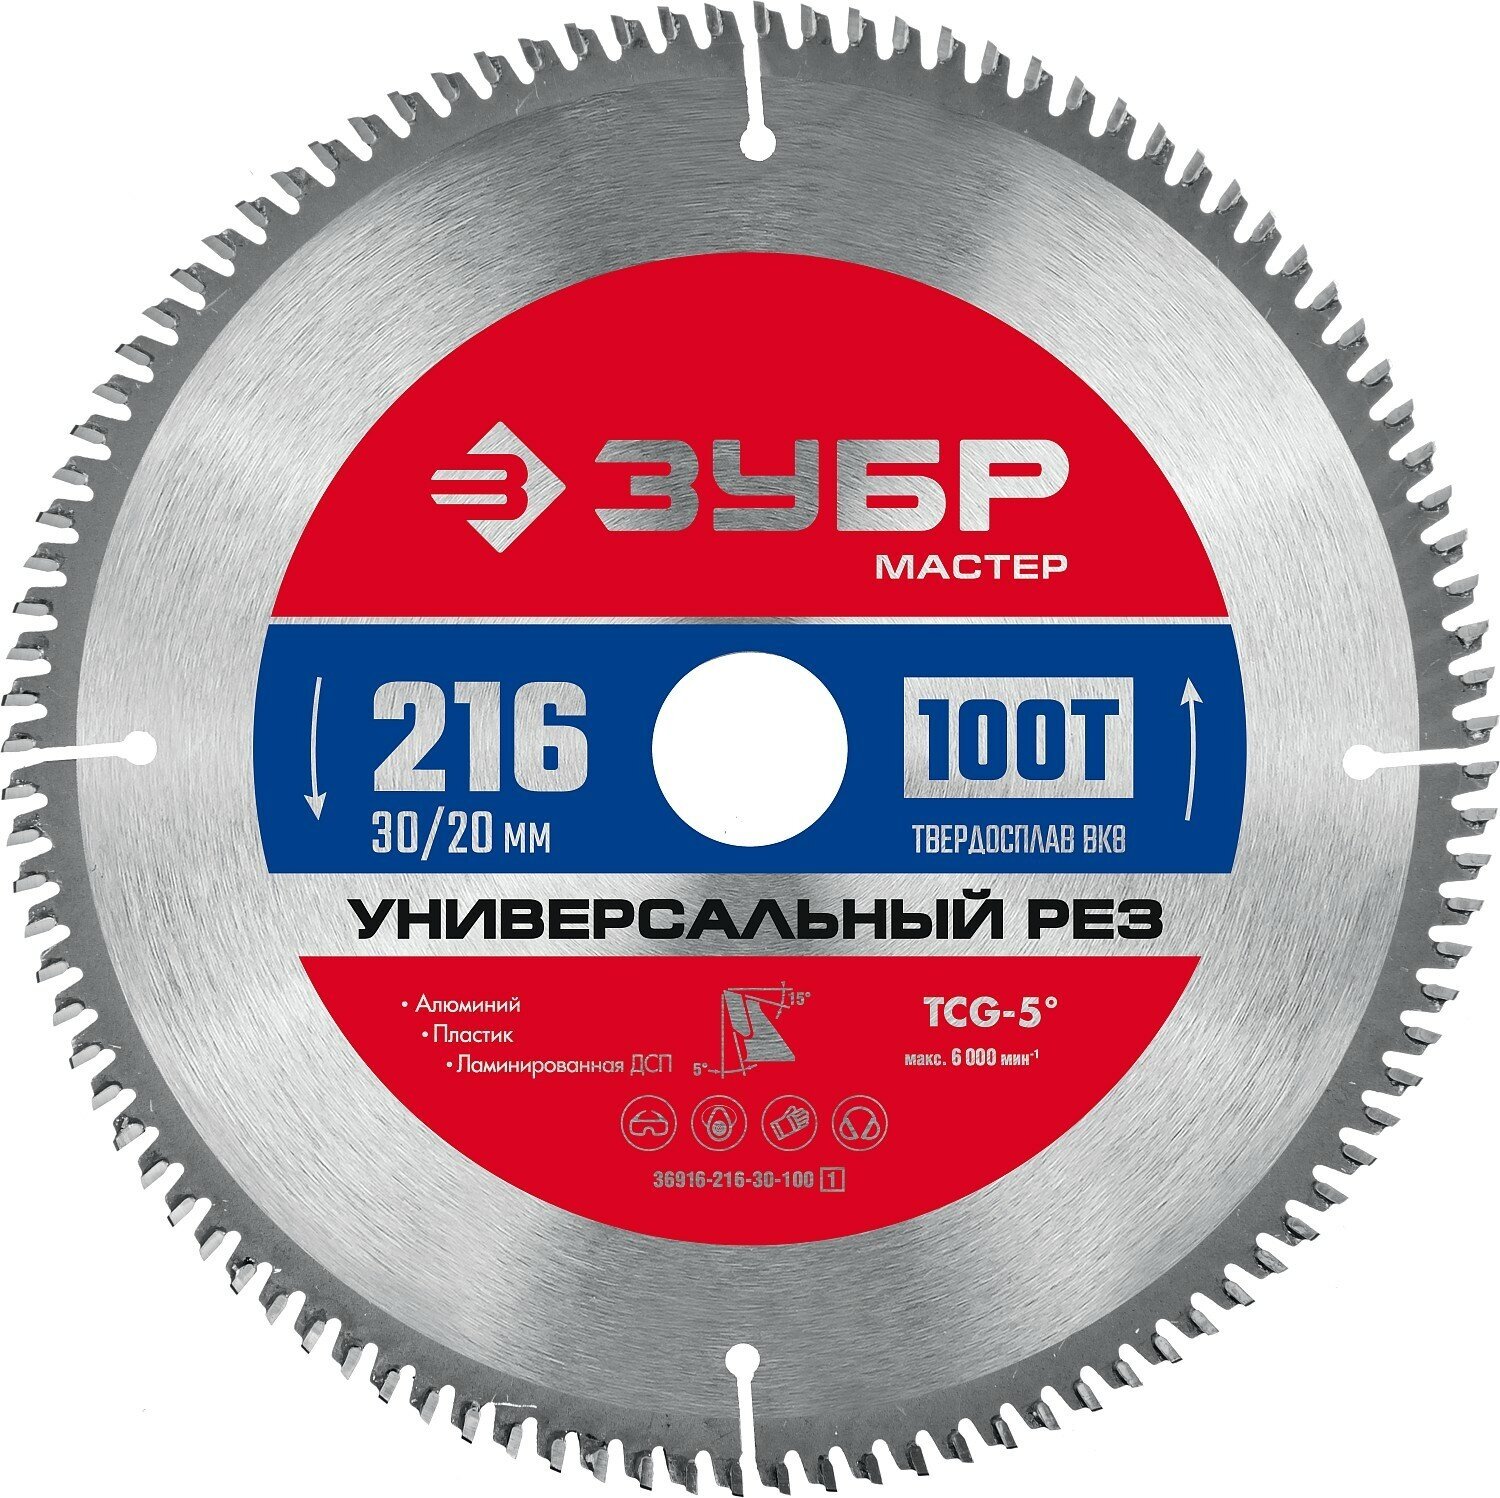 ЗУБР Универсальный рез 216 x 30/20 мм 100Т пильный диск по алюминию (36916-216-30-100)